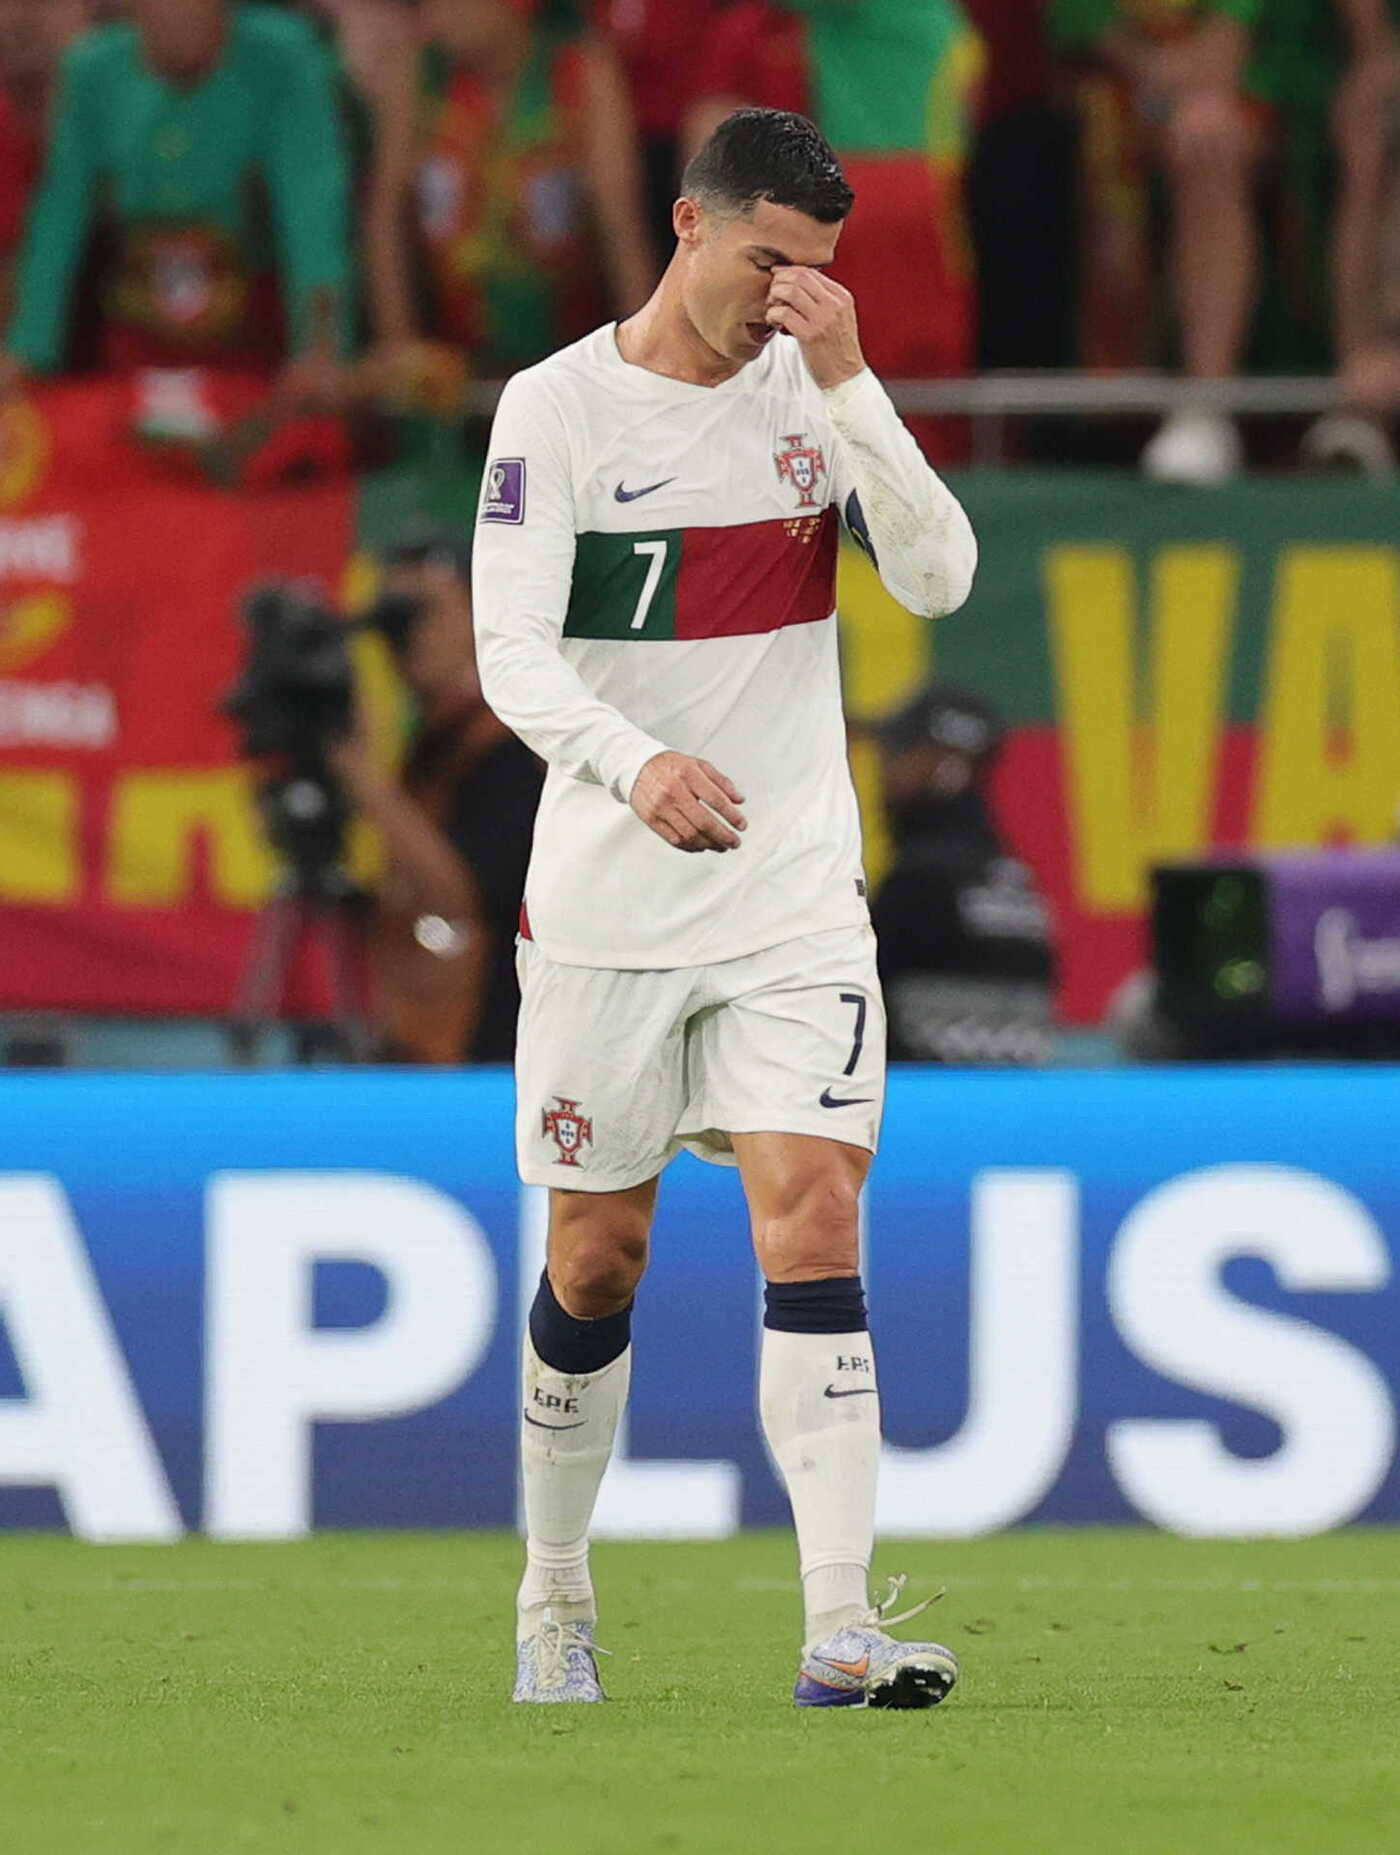 Ronaldo khóc nức nở trên sân cỏ và điều đó khiến người hâm mộ cảm động. Xem hình ảnh này để được chứng kiến một khoảnh khắc đầy xúc động của siêu sao bóng đá.